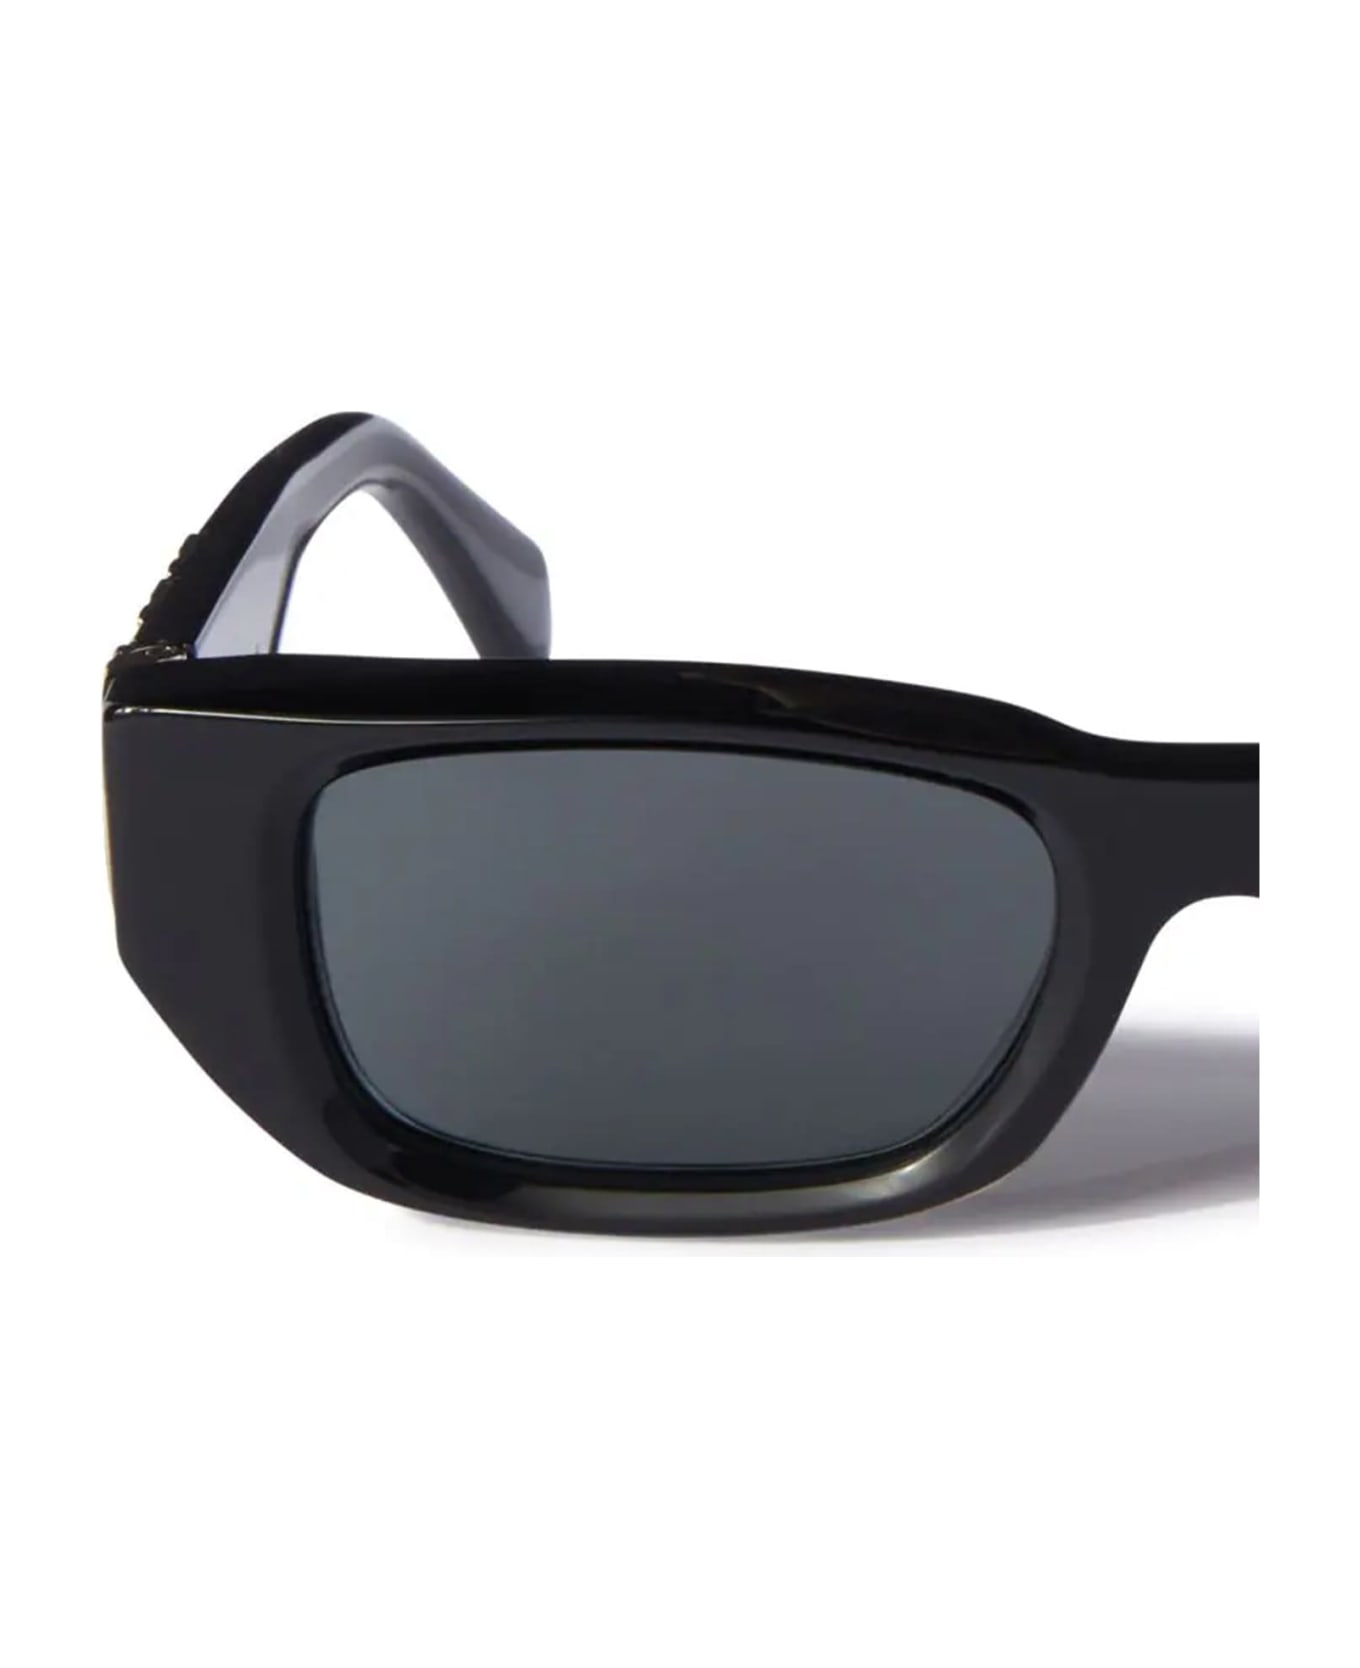 Off-White Fillmore - Black / Dark Grey Sunglasses - Black